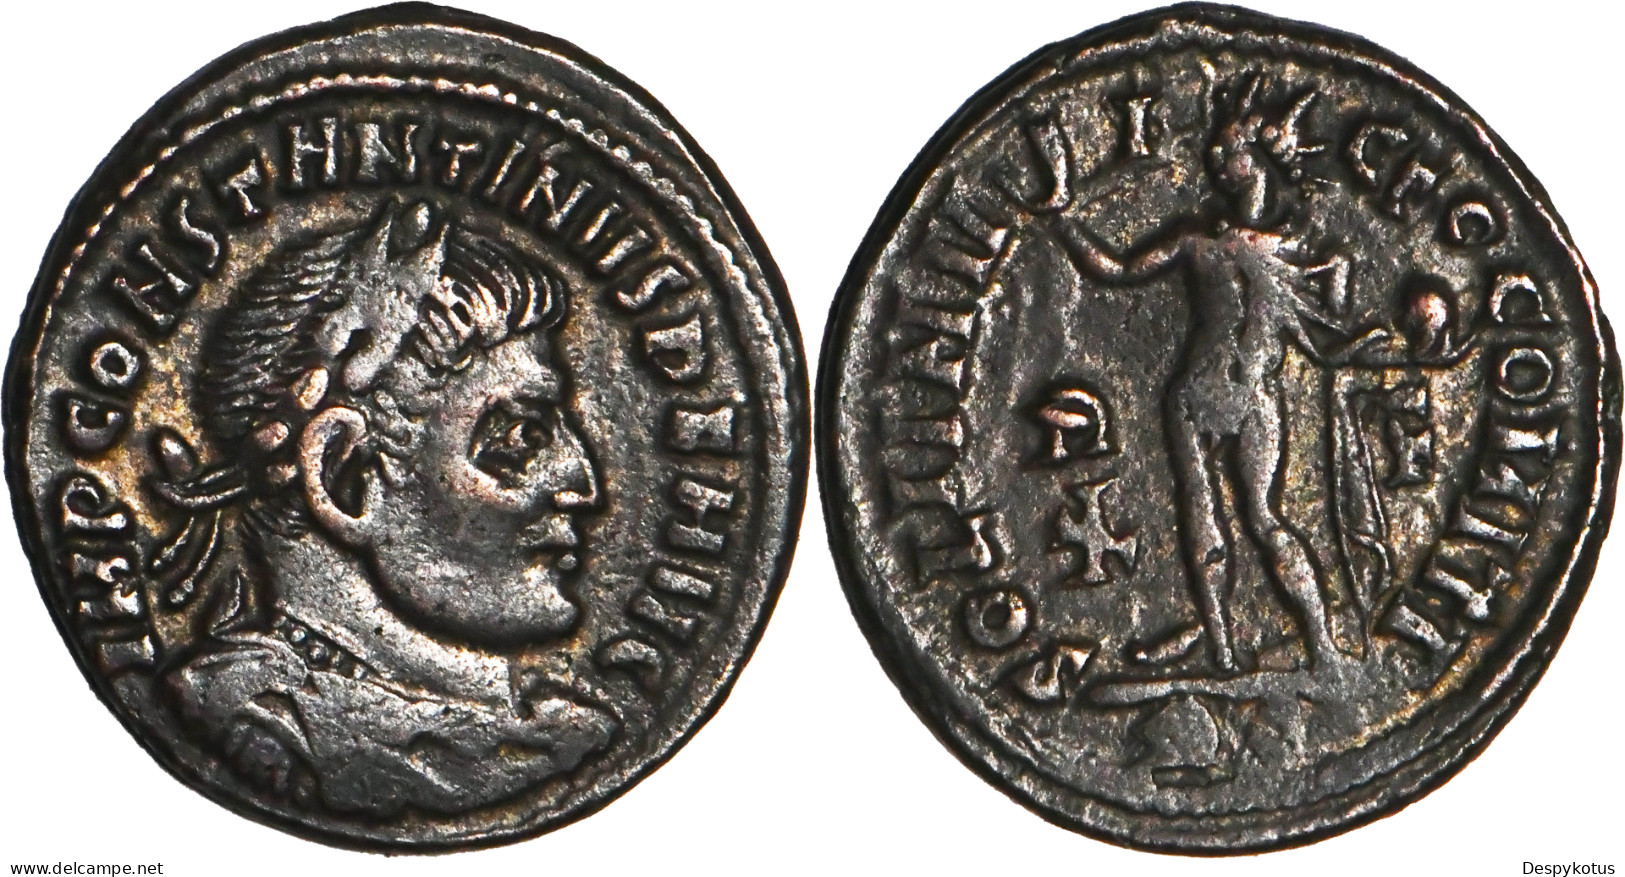 ROME - Centenionalis - CONSTANTIN I - SOLI INVICTO - ROME (RP) - 317 AD - RIC.27 - 19-142 - El Imperio Christiano (307 / 363)